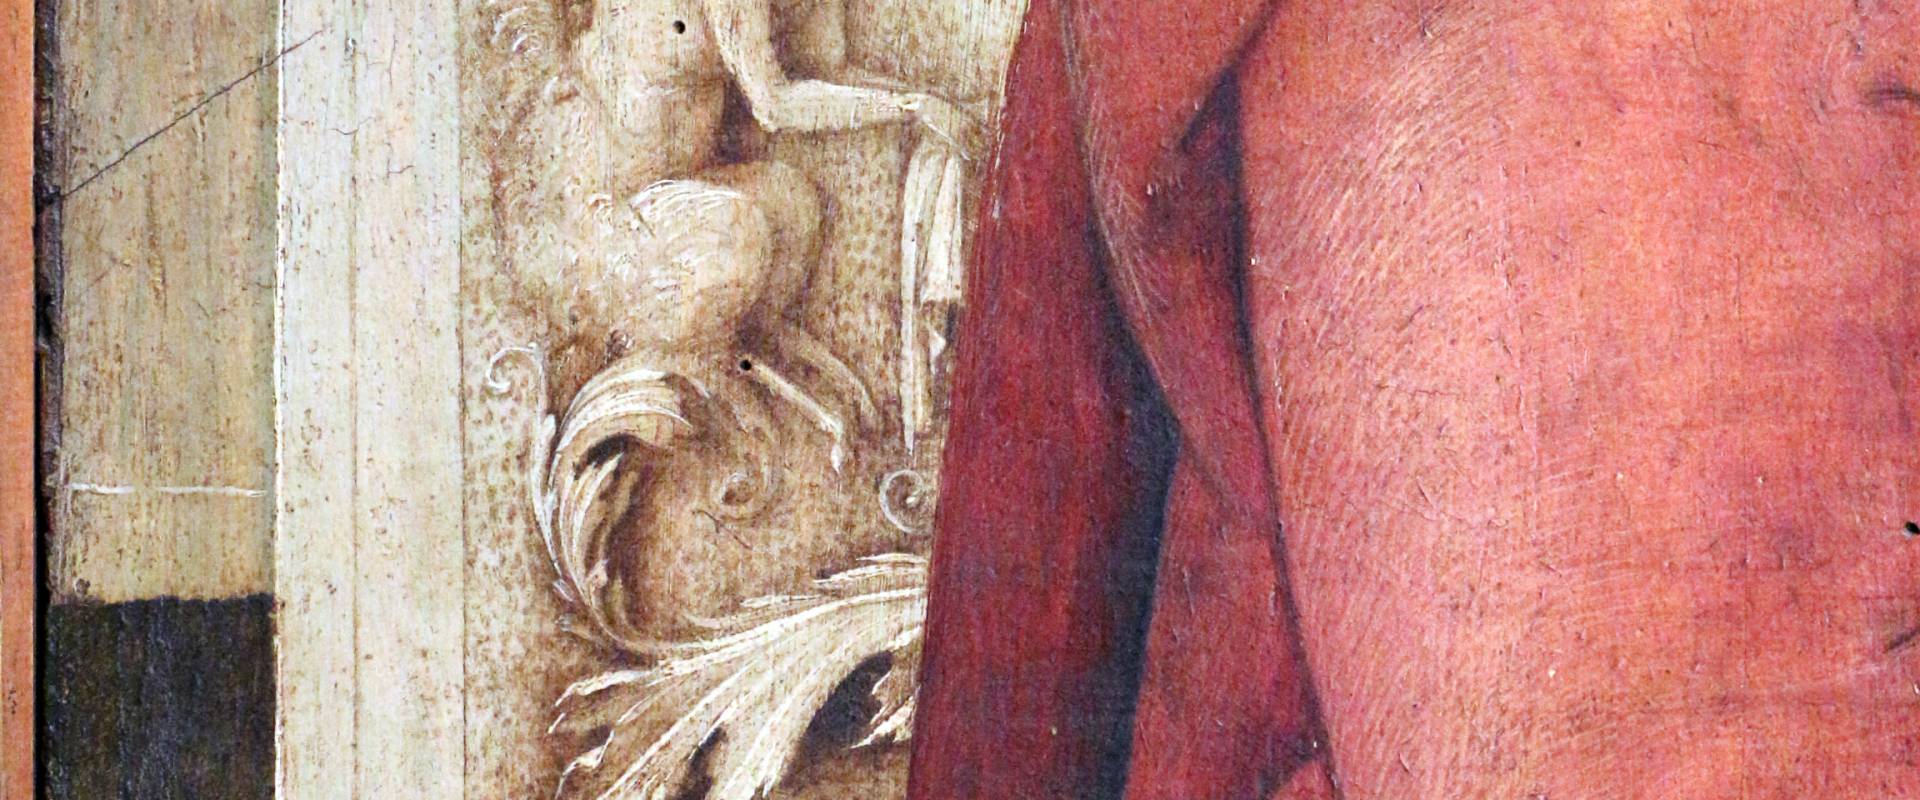 Amico aspertini, adorazione dei magi, 1499-1500 ca., da s.m. maddalena di galliera, 04 foto di Sailko